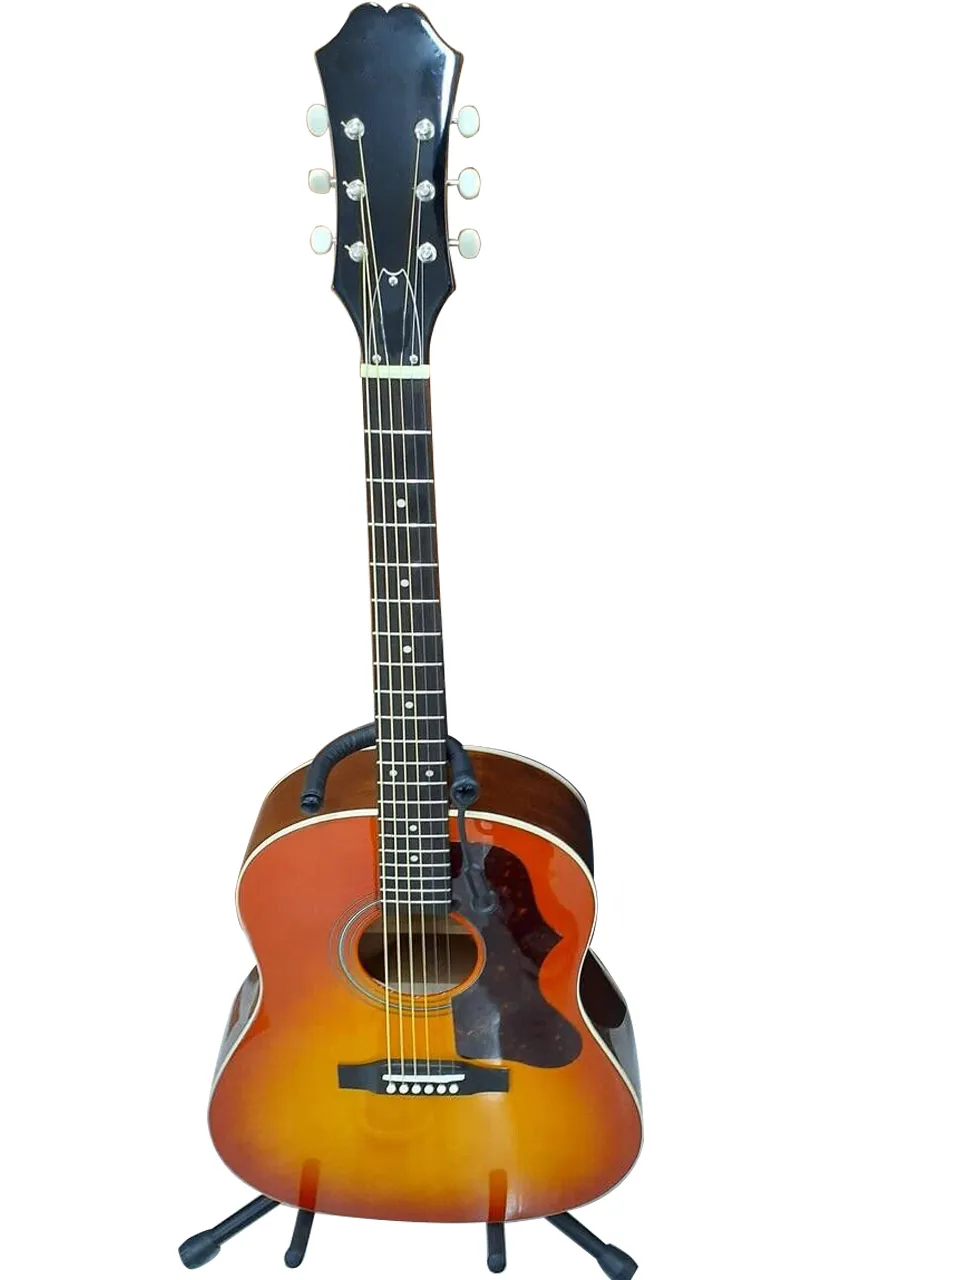 EJ-45 FC 사진과 동일한 음향 기타